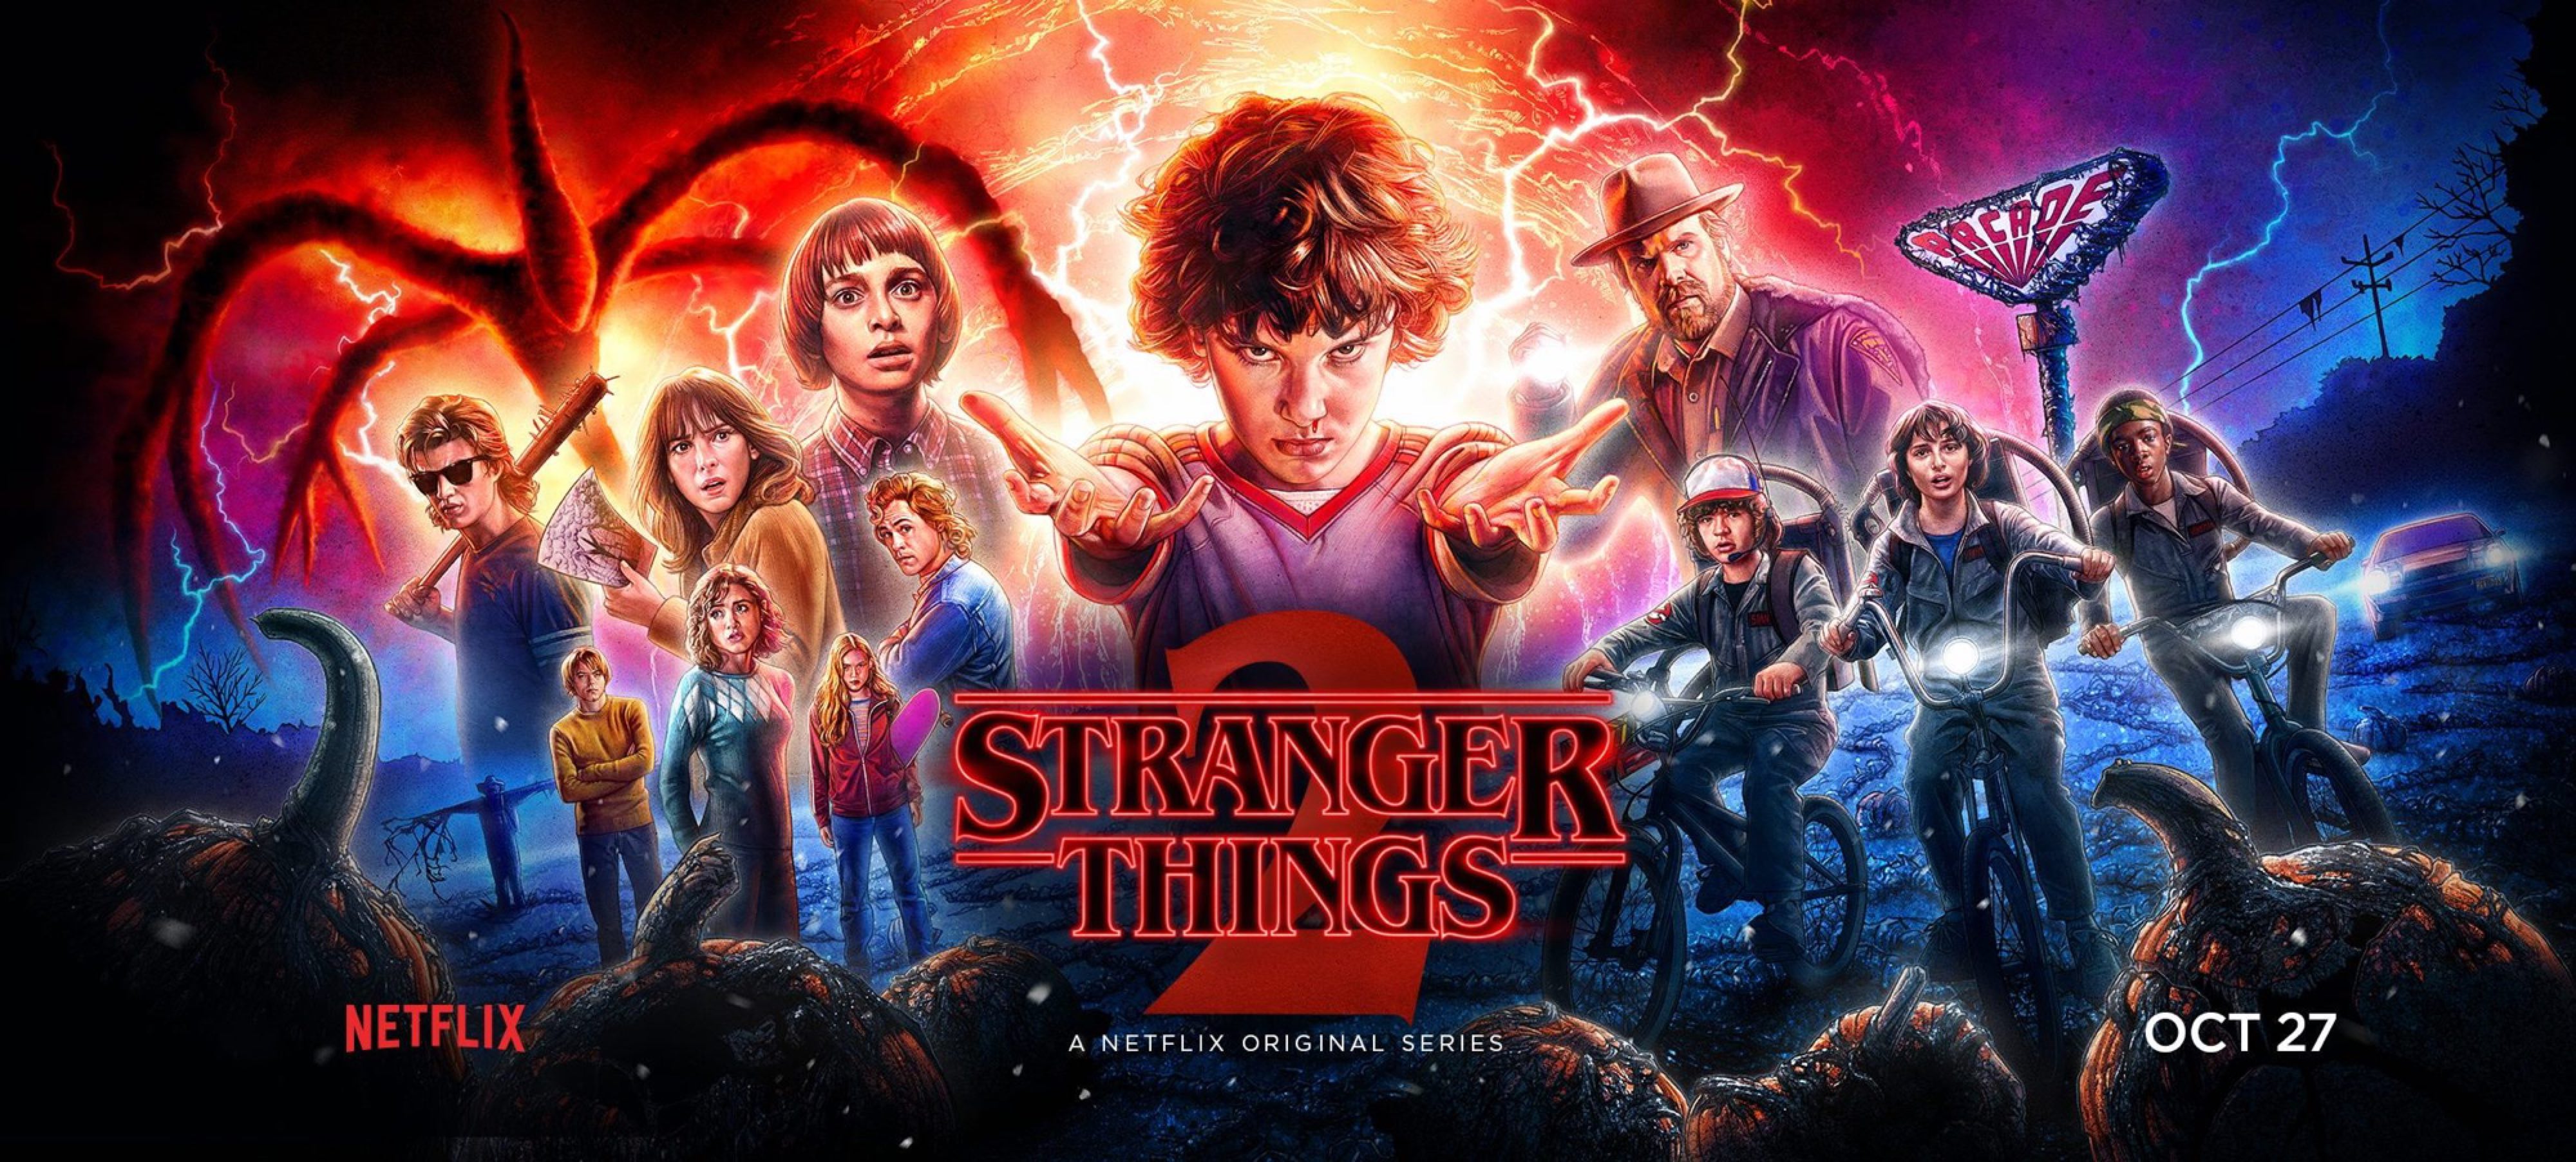 Stranger Things 3 | Official Final Trailer | Netflix4000 x 1804